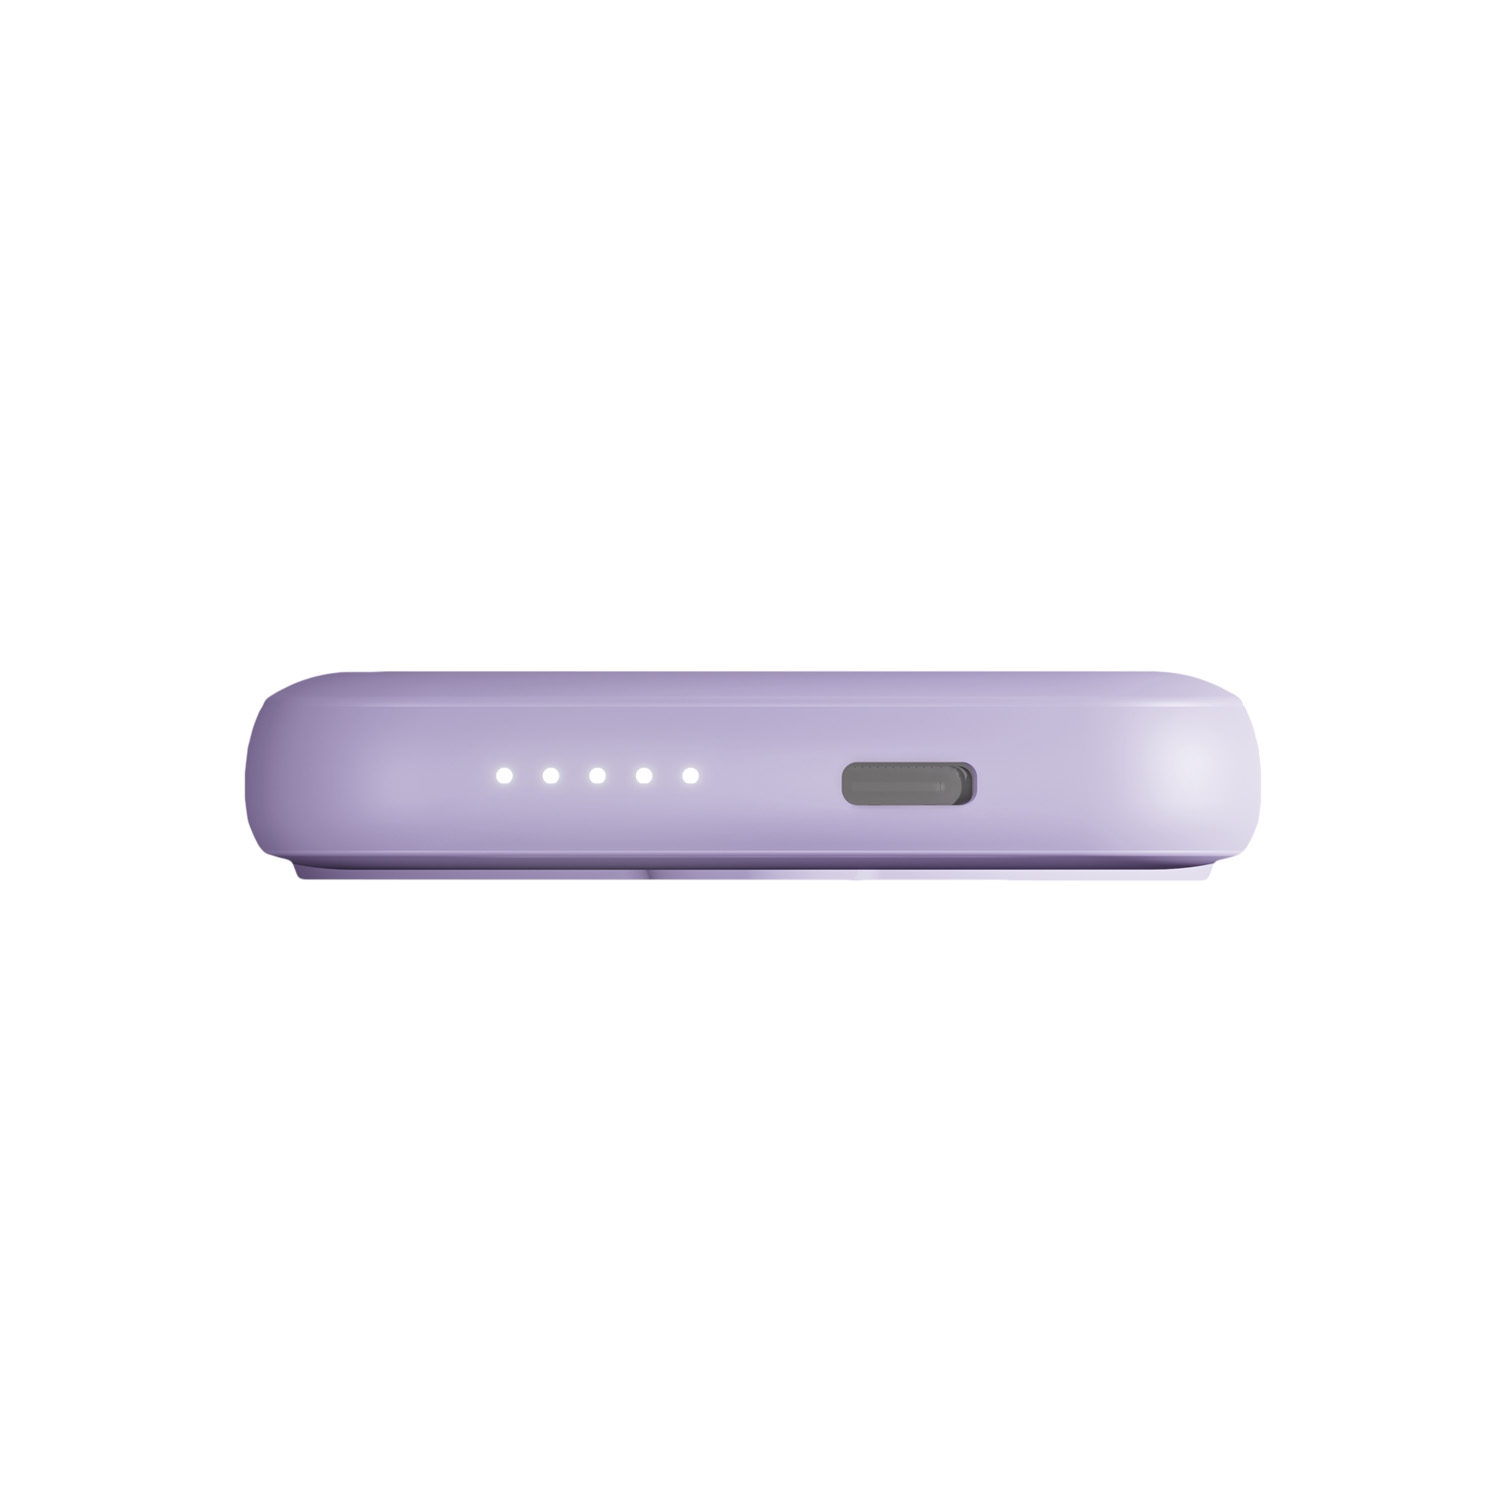 Беспроводной магнитный ПЗУ Vipe Jake 5, фиолетовый, фиолетовый, пластик